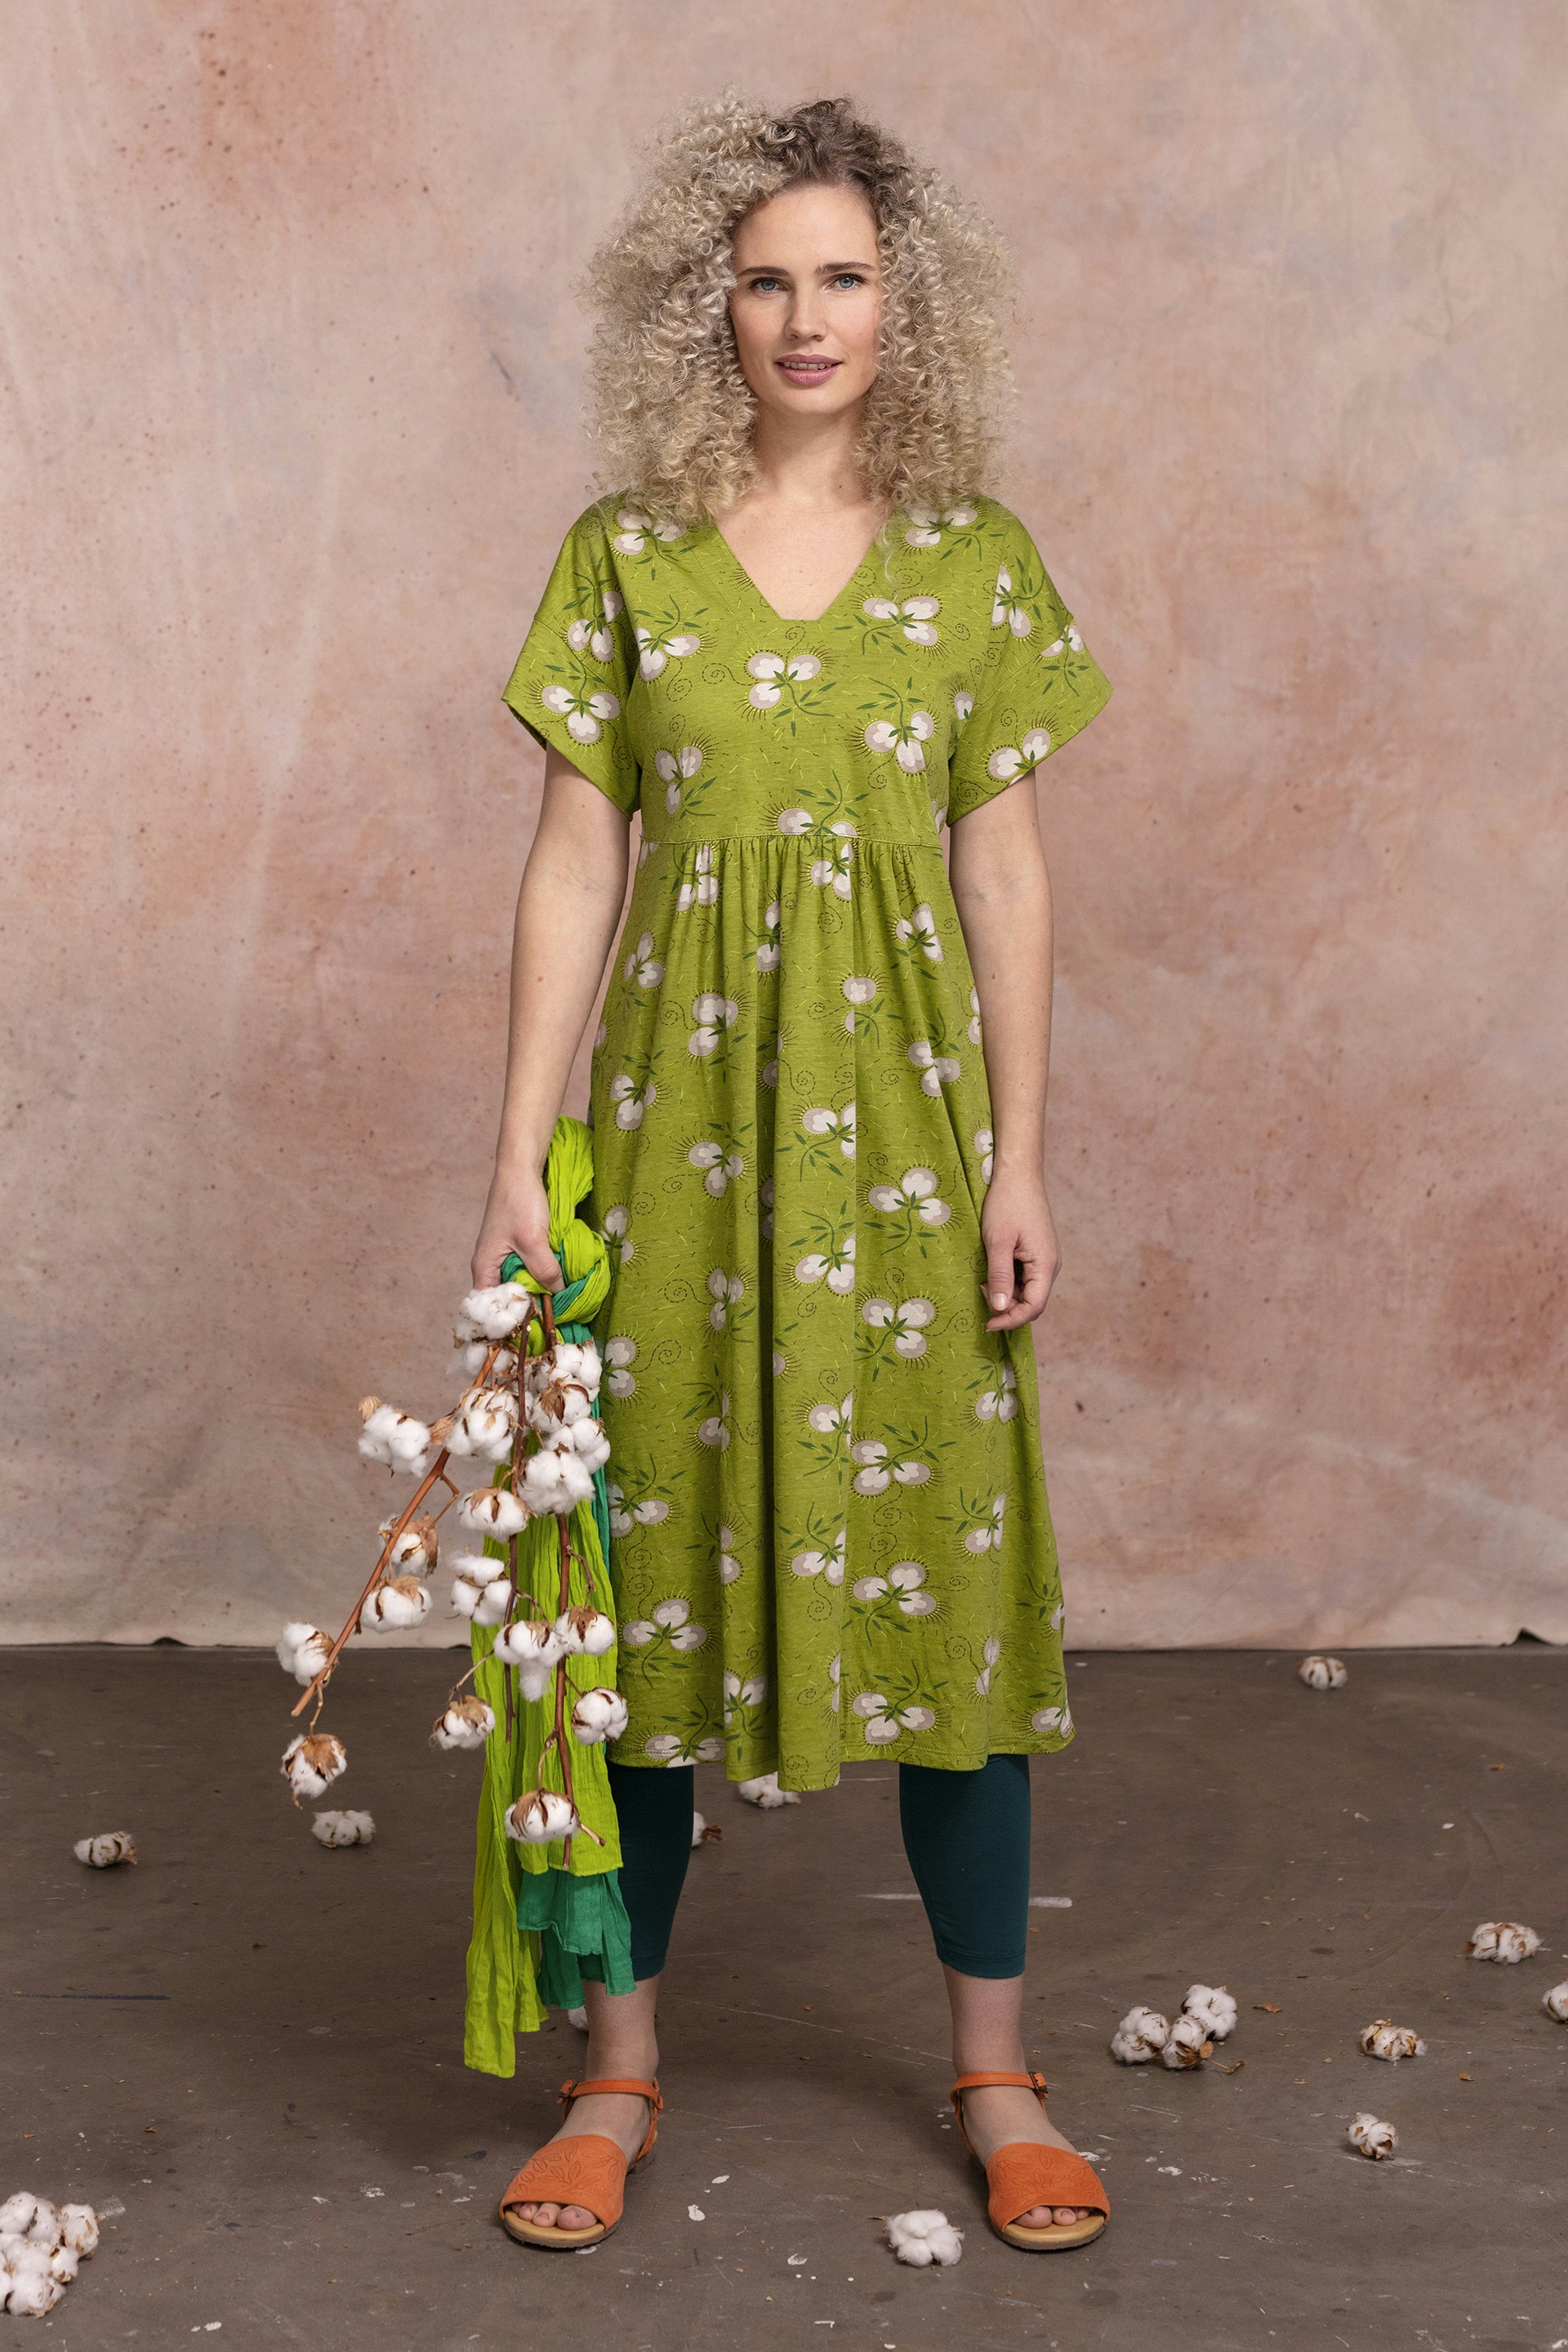 Gudrun Sjödén model in a green dress